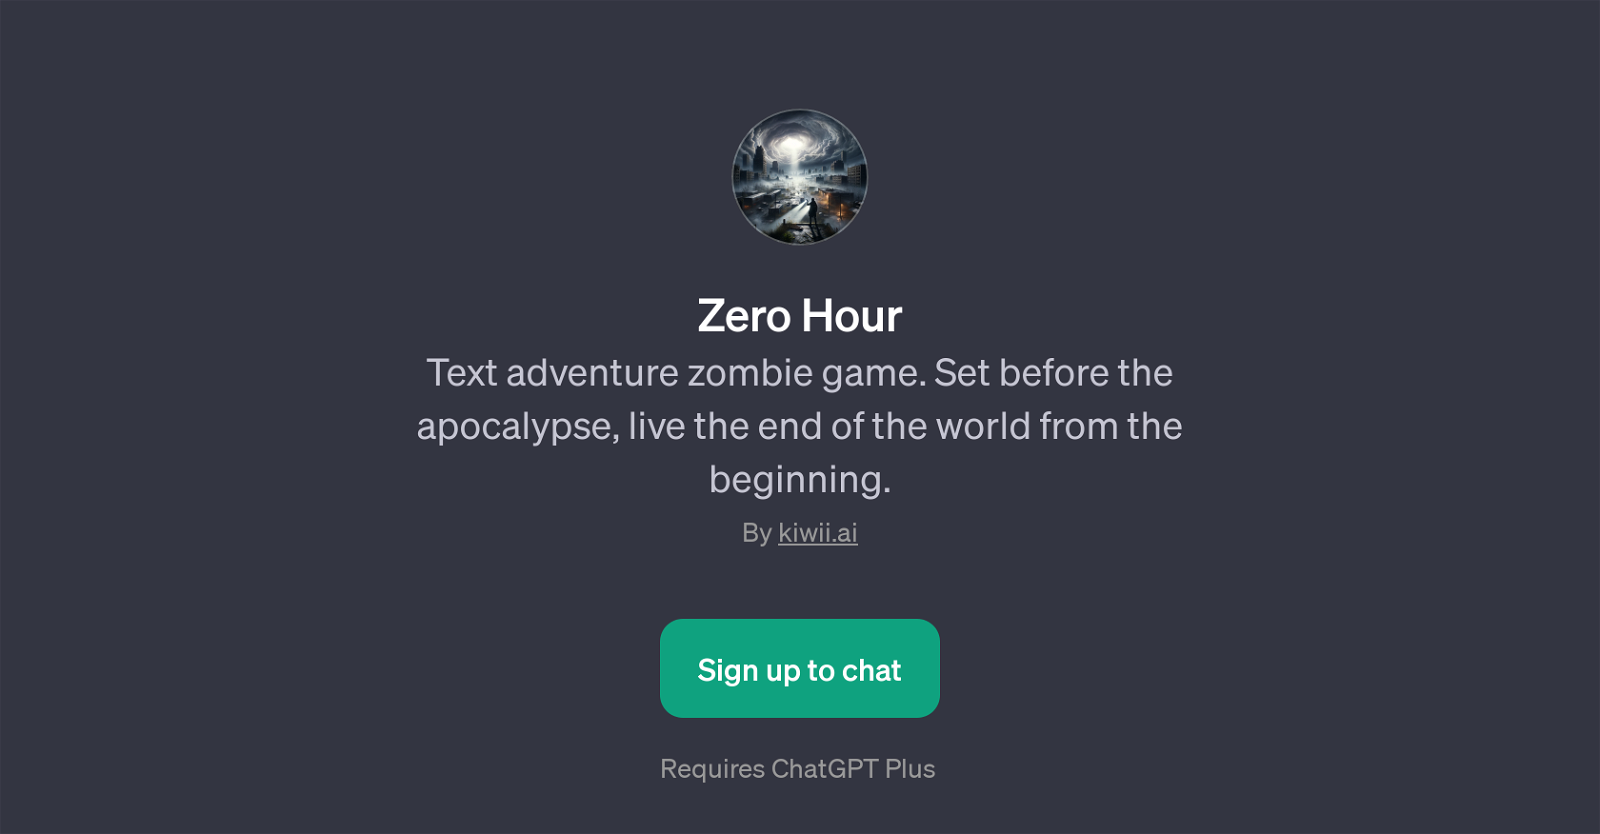 Zero Hour website